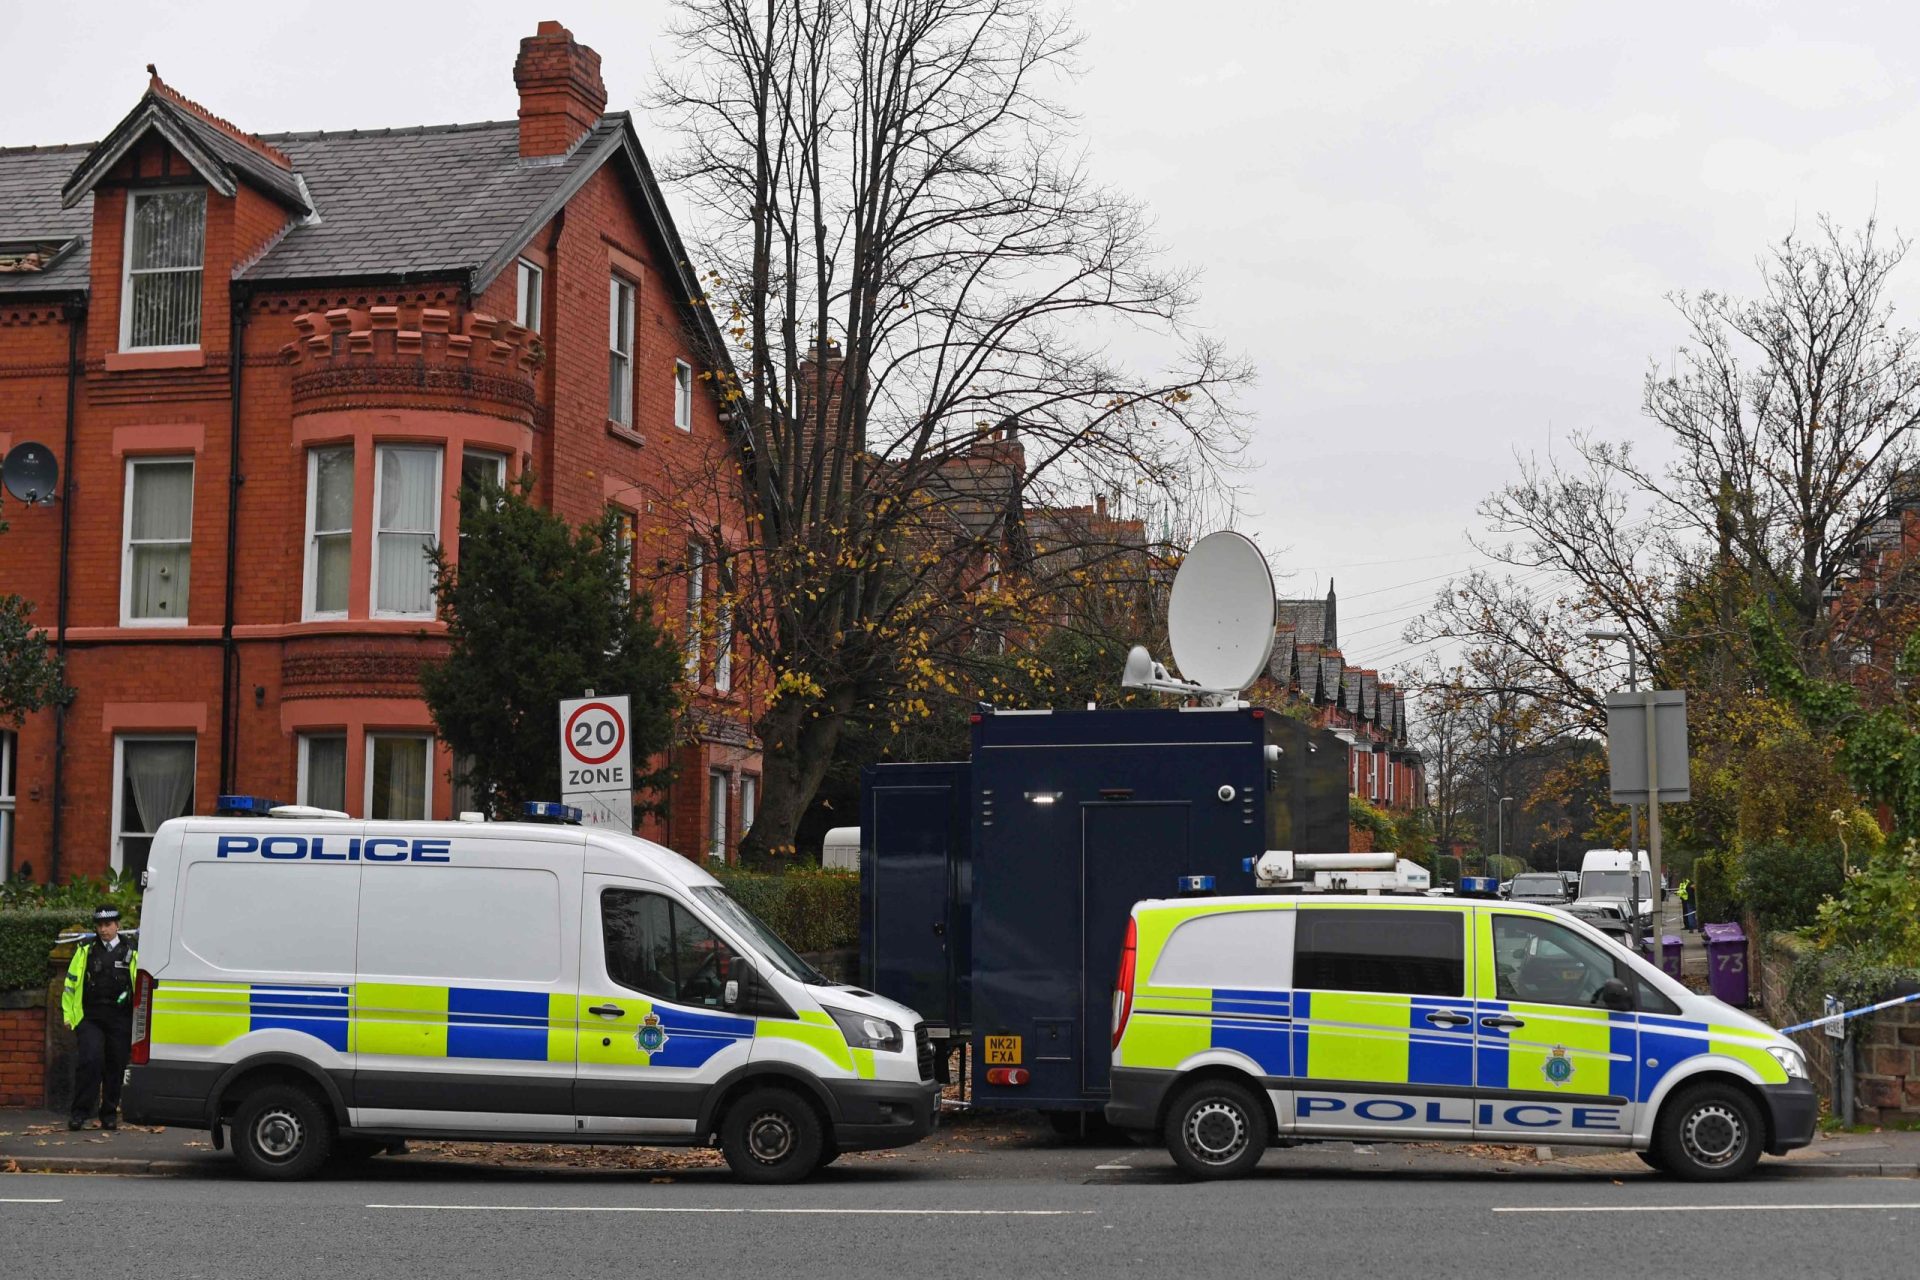 Reino Unido sobe para o nível “grave” de alerta para o terrorismo depois de incidente com explosivo no interior do táxi